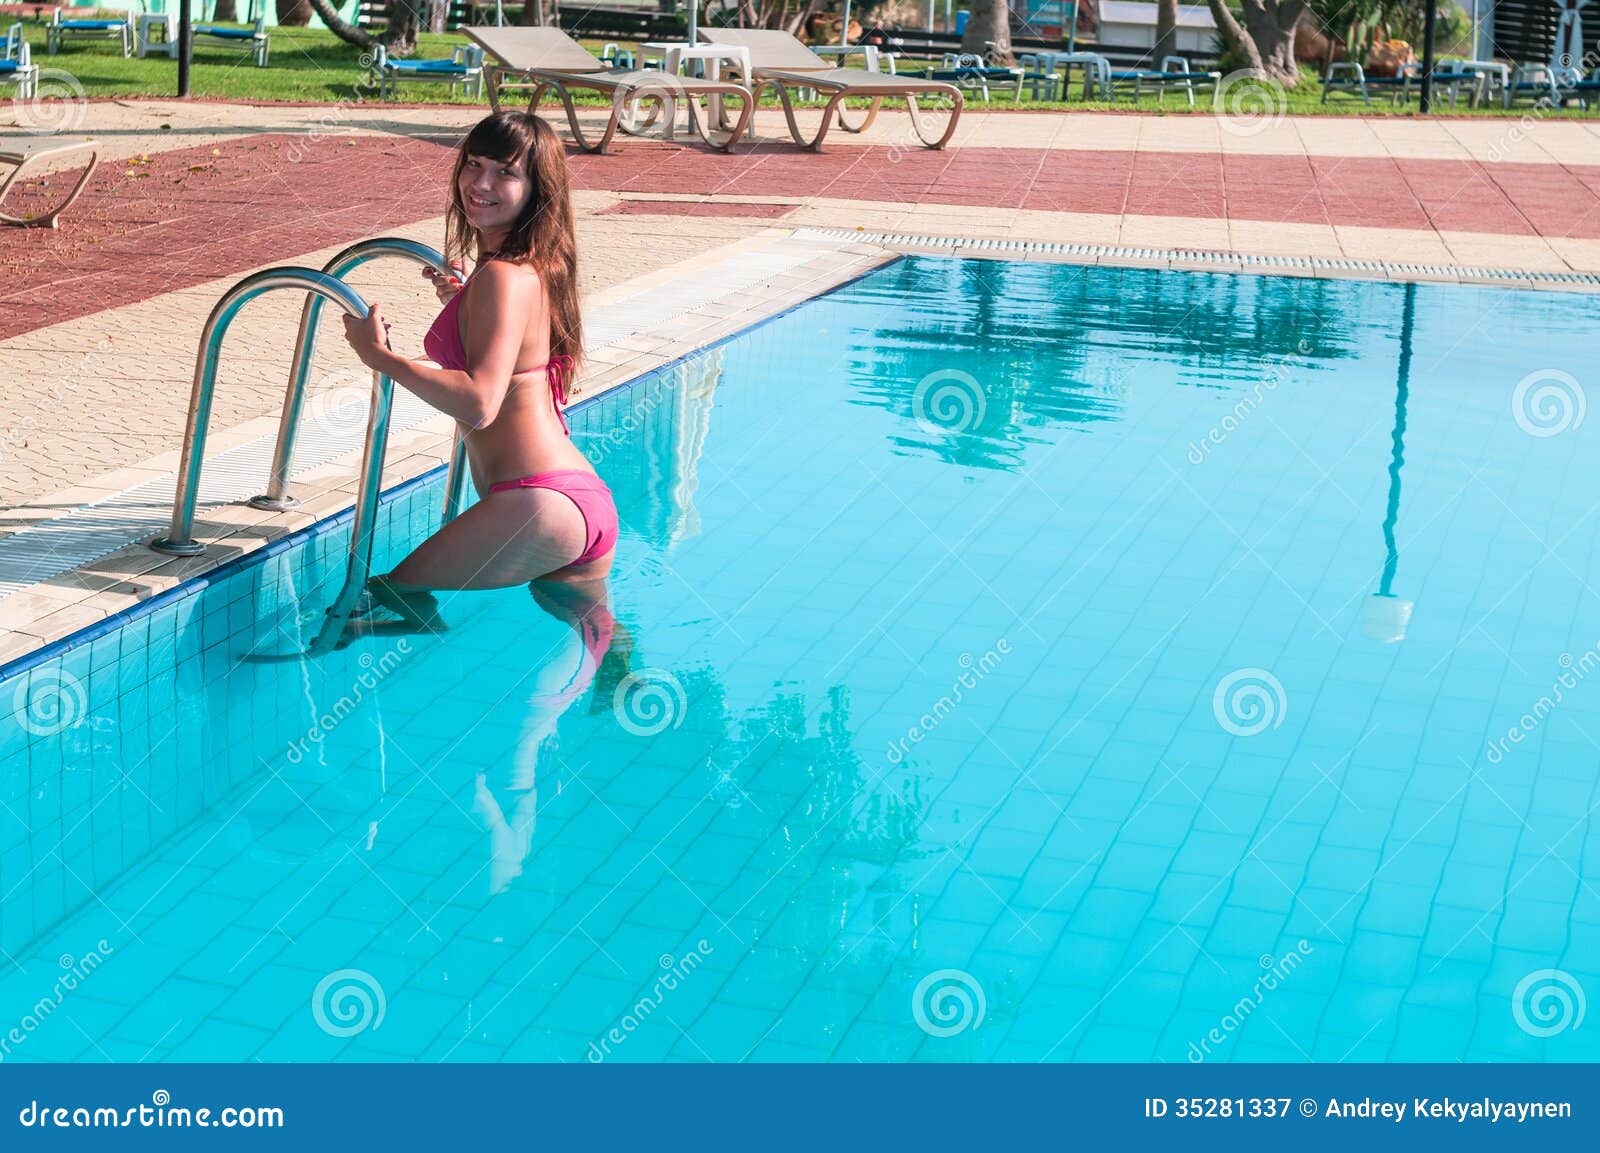 Купалась белье. Девушка спускается в бассейн. Худая жена в бассейне домашнее. Фото женщины 35 откровенность очень открытый бассейн.